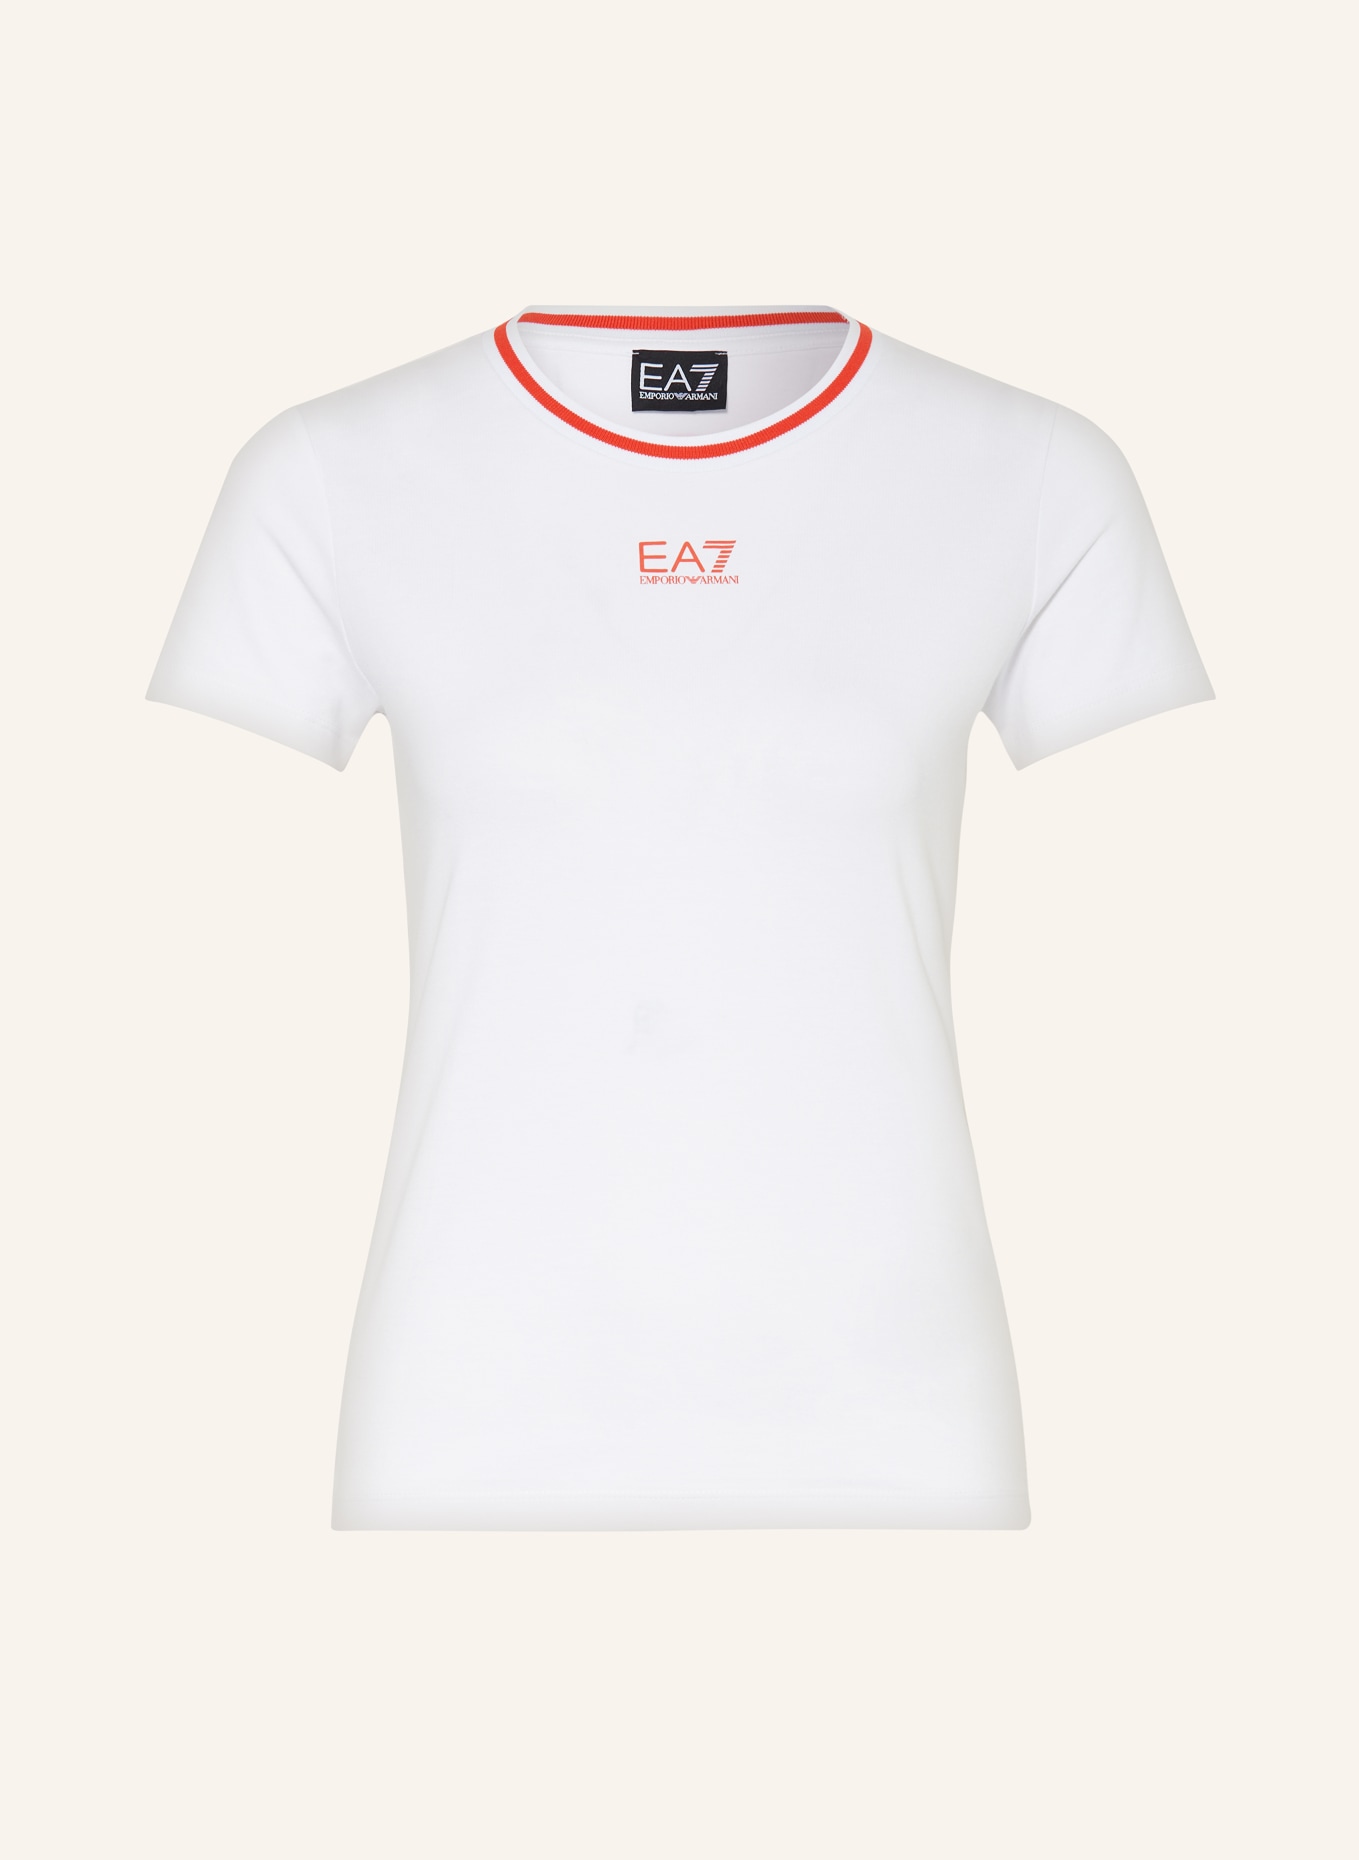 EA7 EMPORIO ARMANI T-Shirt, Farbe: WEISS (Bild 1)